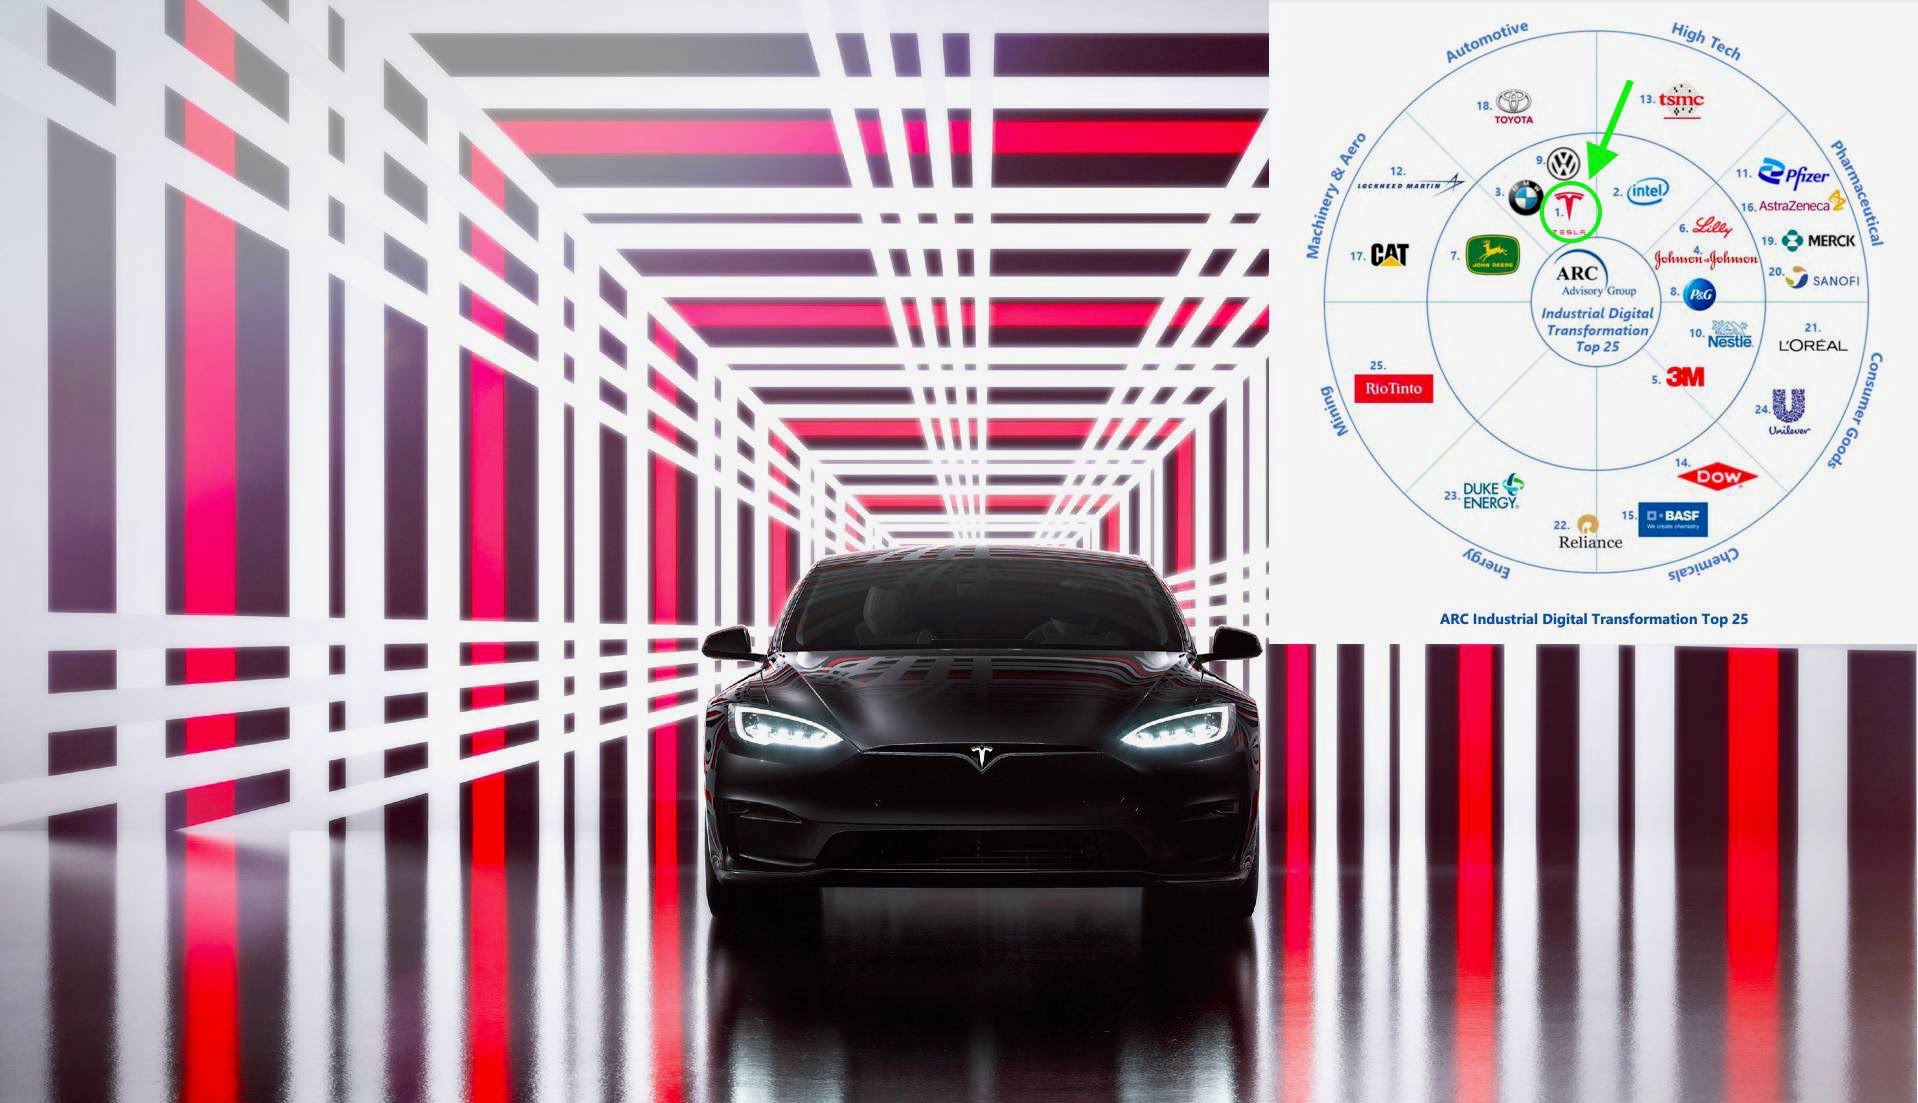 Tesla obtient la première place dans le premier rapport sur la transformation numérique industrielle